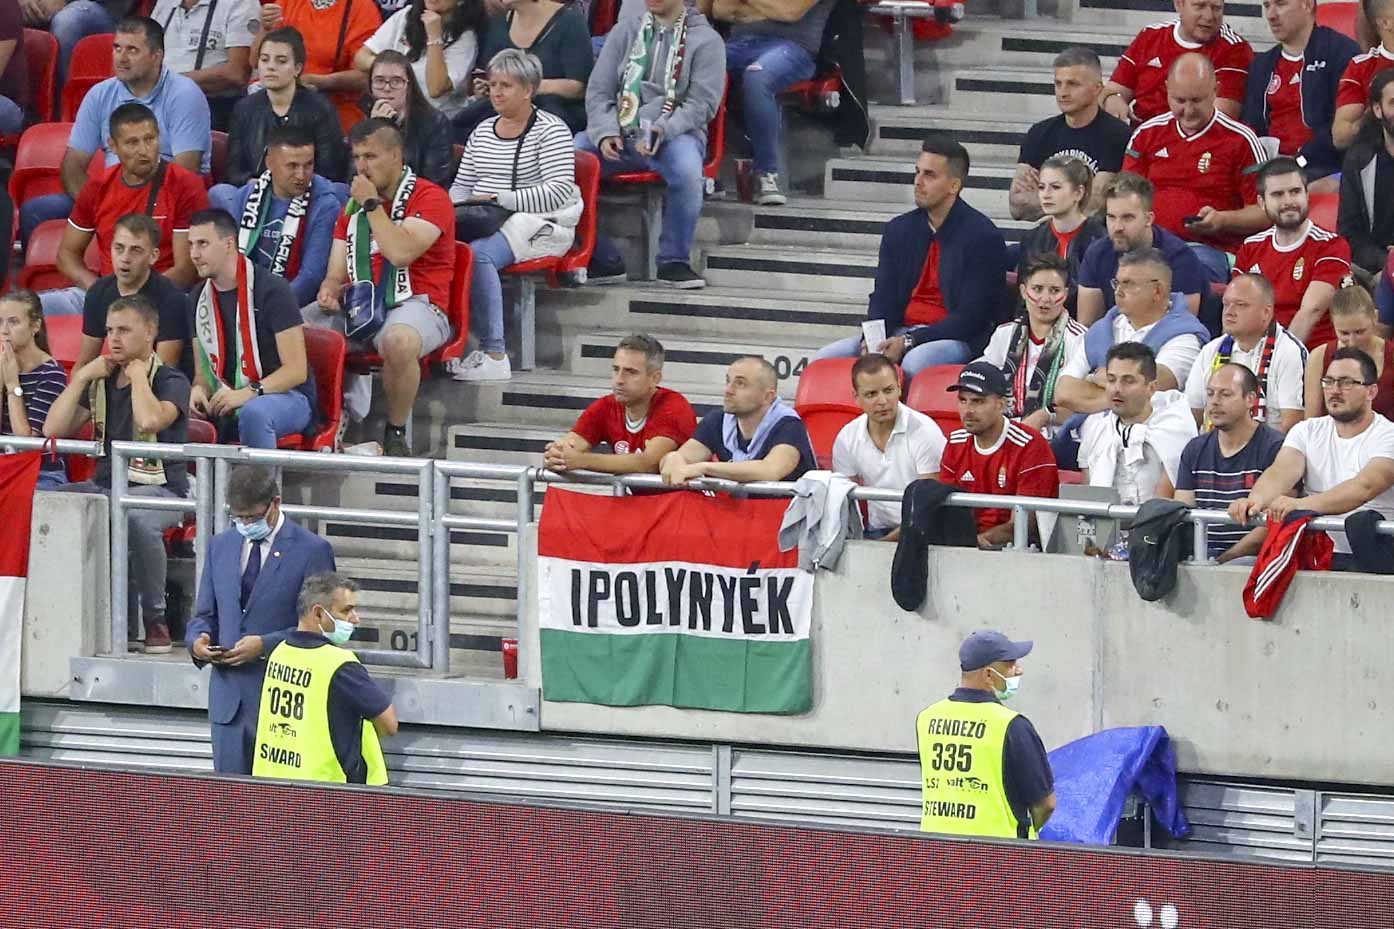 GALÉRIA: A magyar válogatott keserves győzelmet aratott Andorra ellen